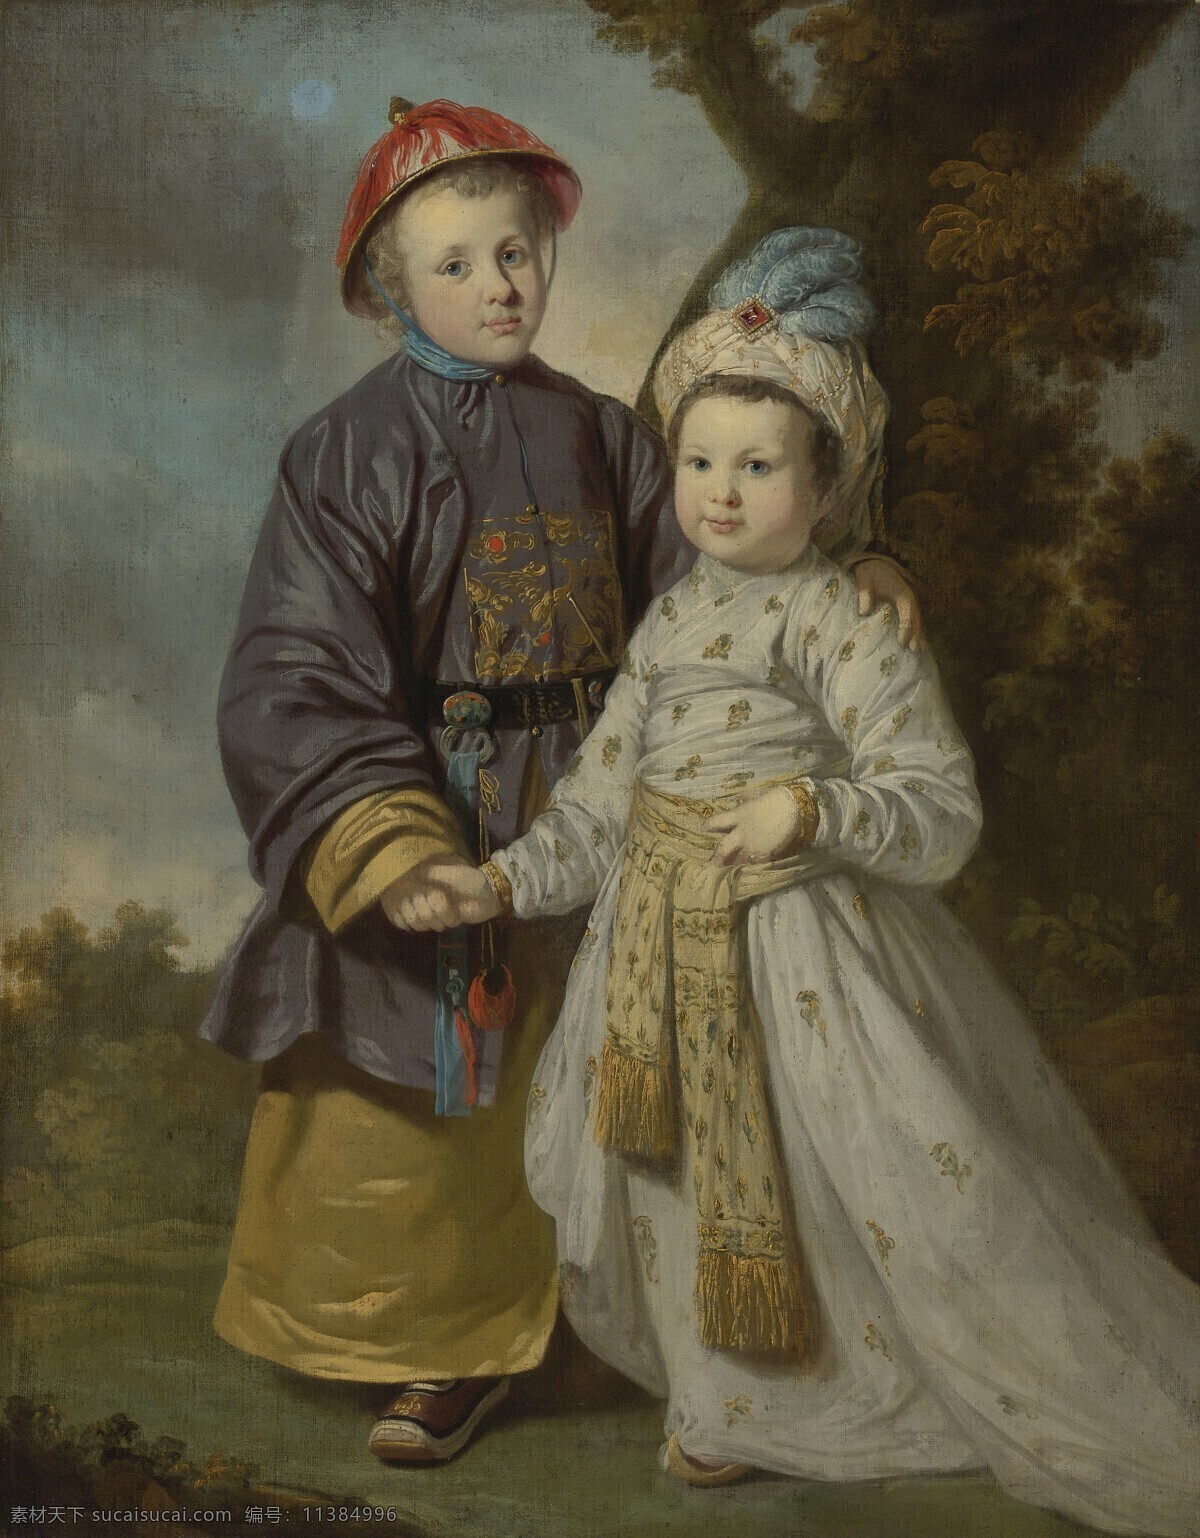 绘画书法 文化艺术 油画 两个 身穿 服饰 孩子 提 利 凯特尔 作品 男孩与女孩 中国 清朝 官员 朝服 阿拉伯人 19世纪油画 家居装饰素材